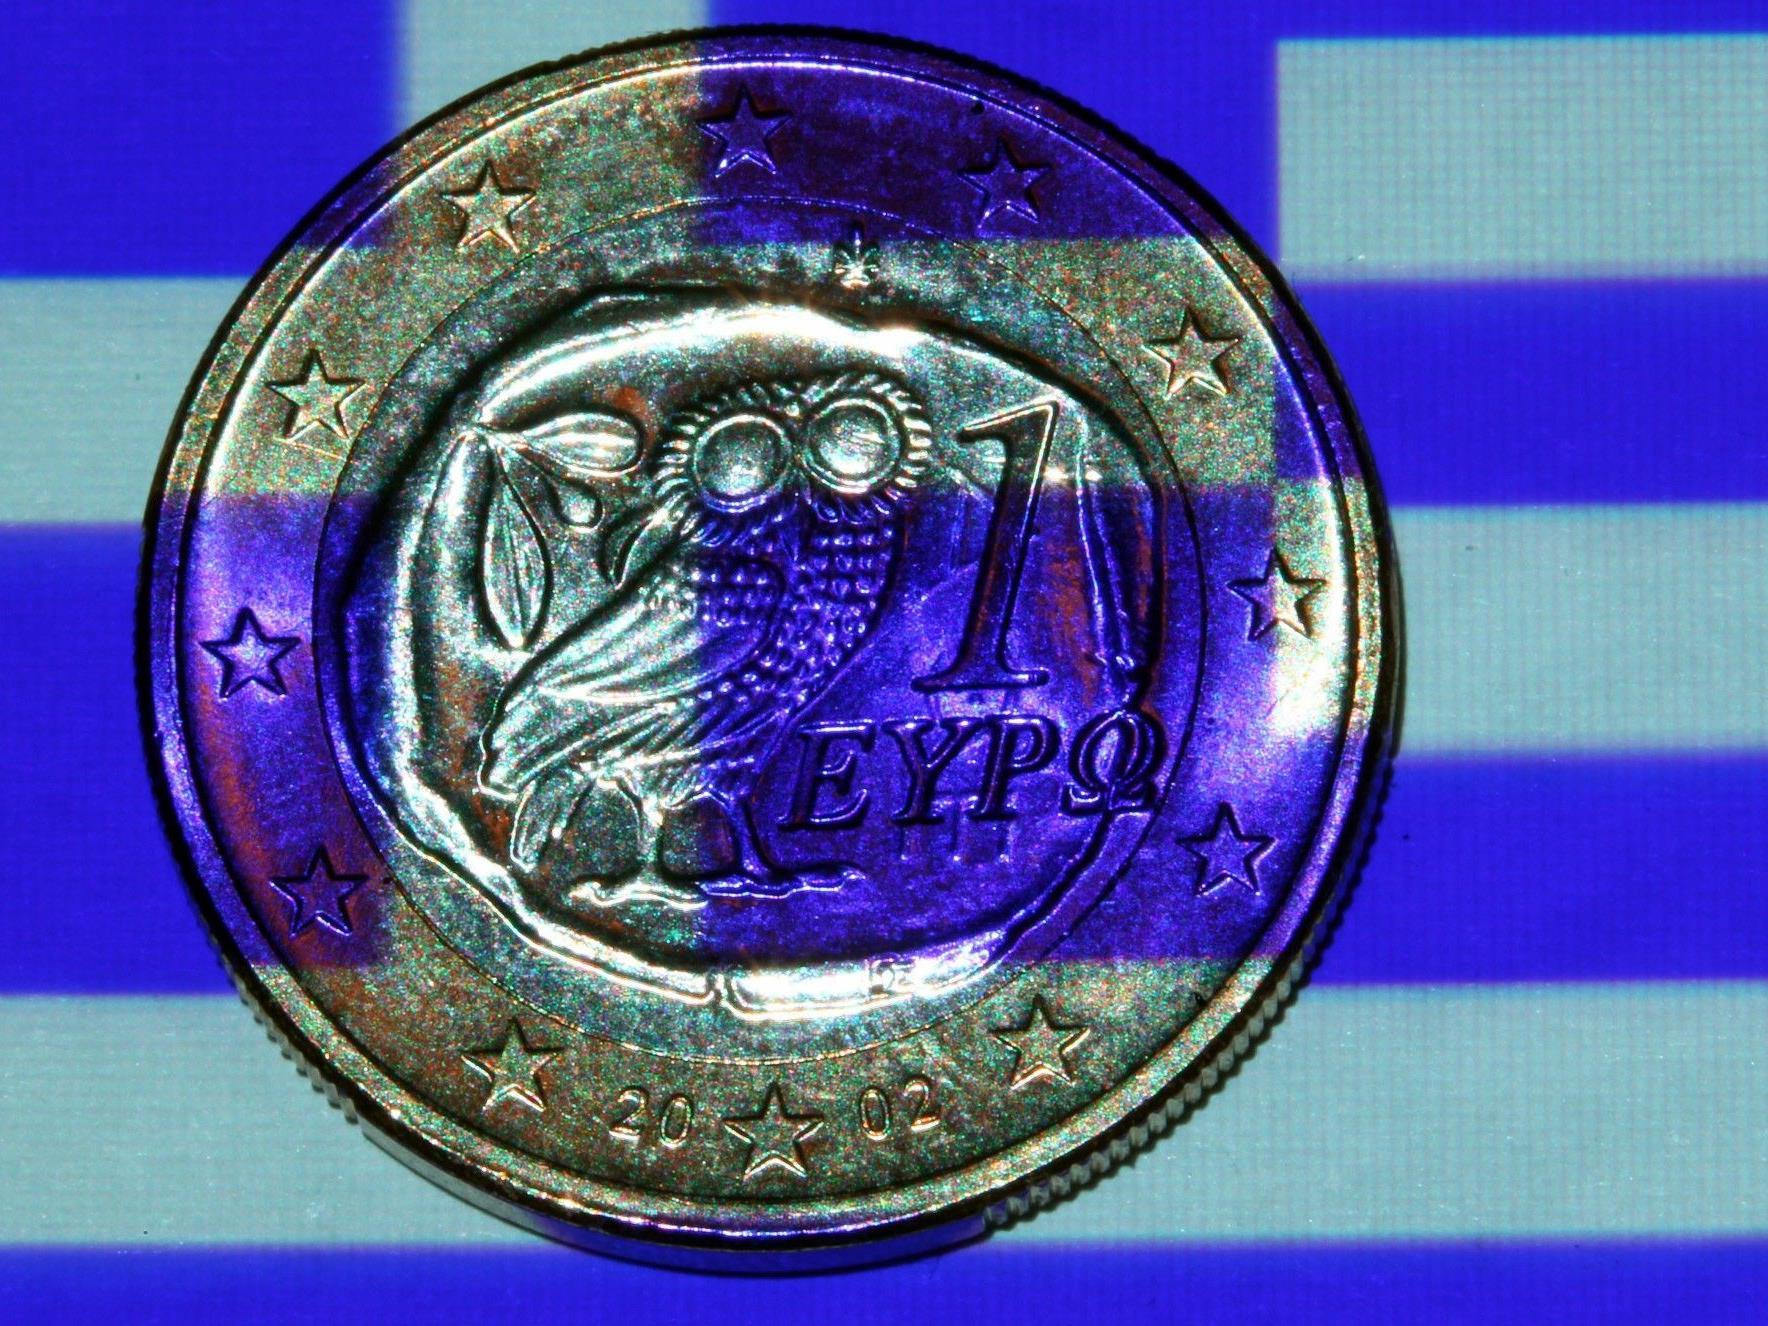 Barreserven fast bei null. Griechischer Vize-Minister schlägt Alarm.